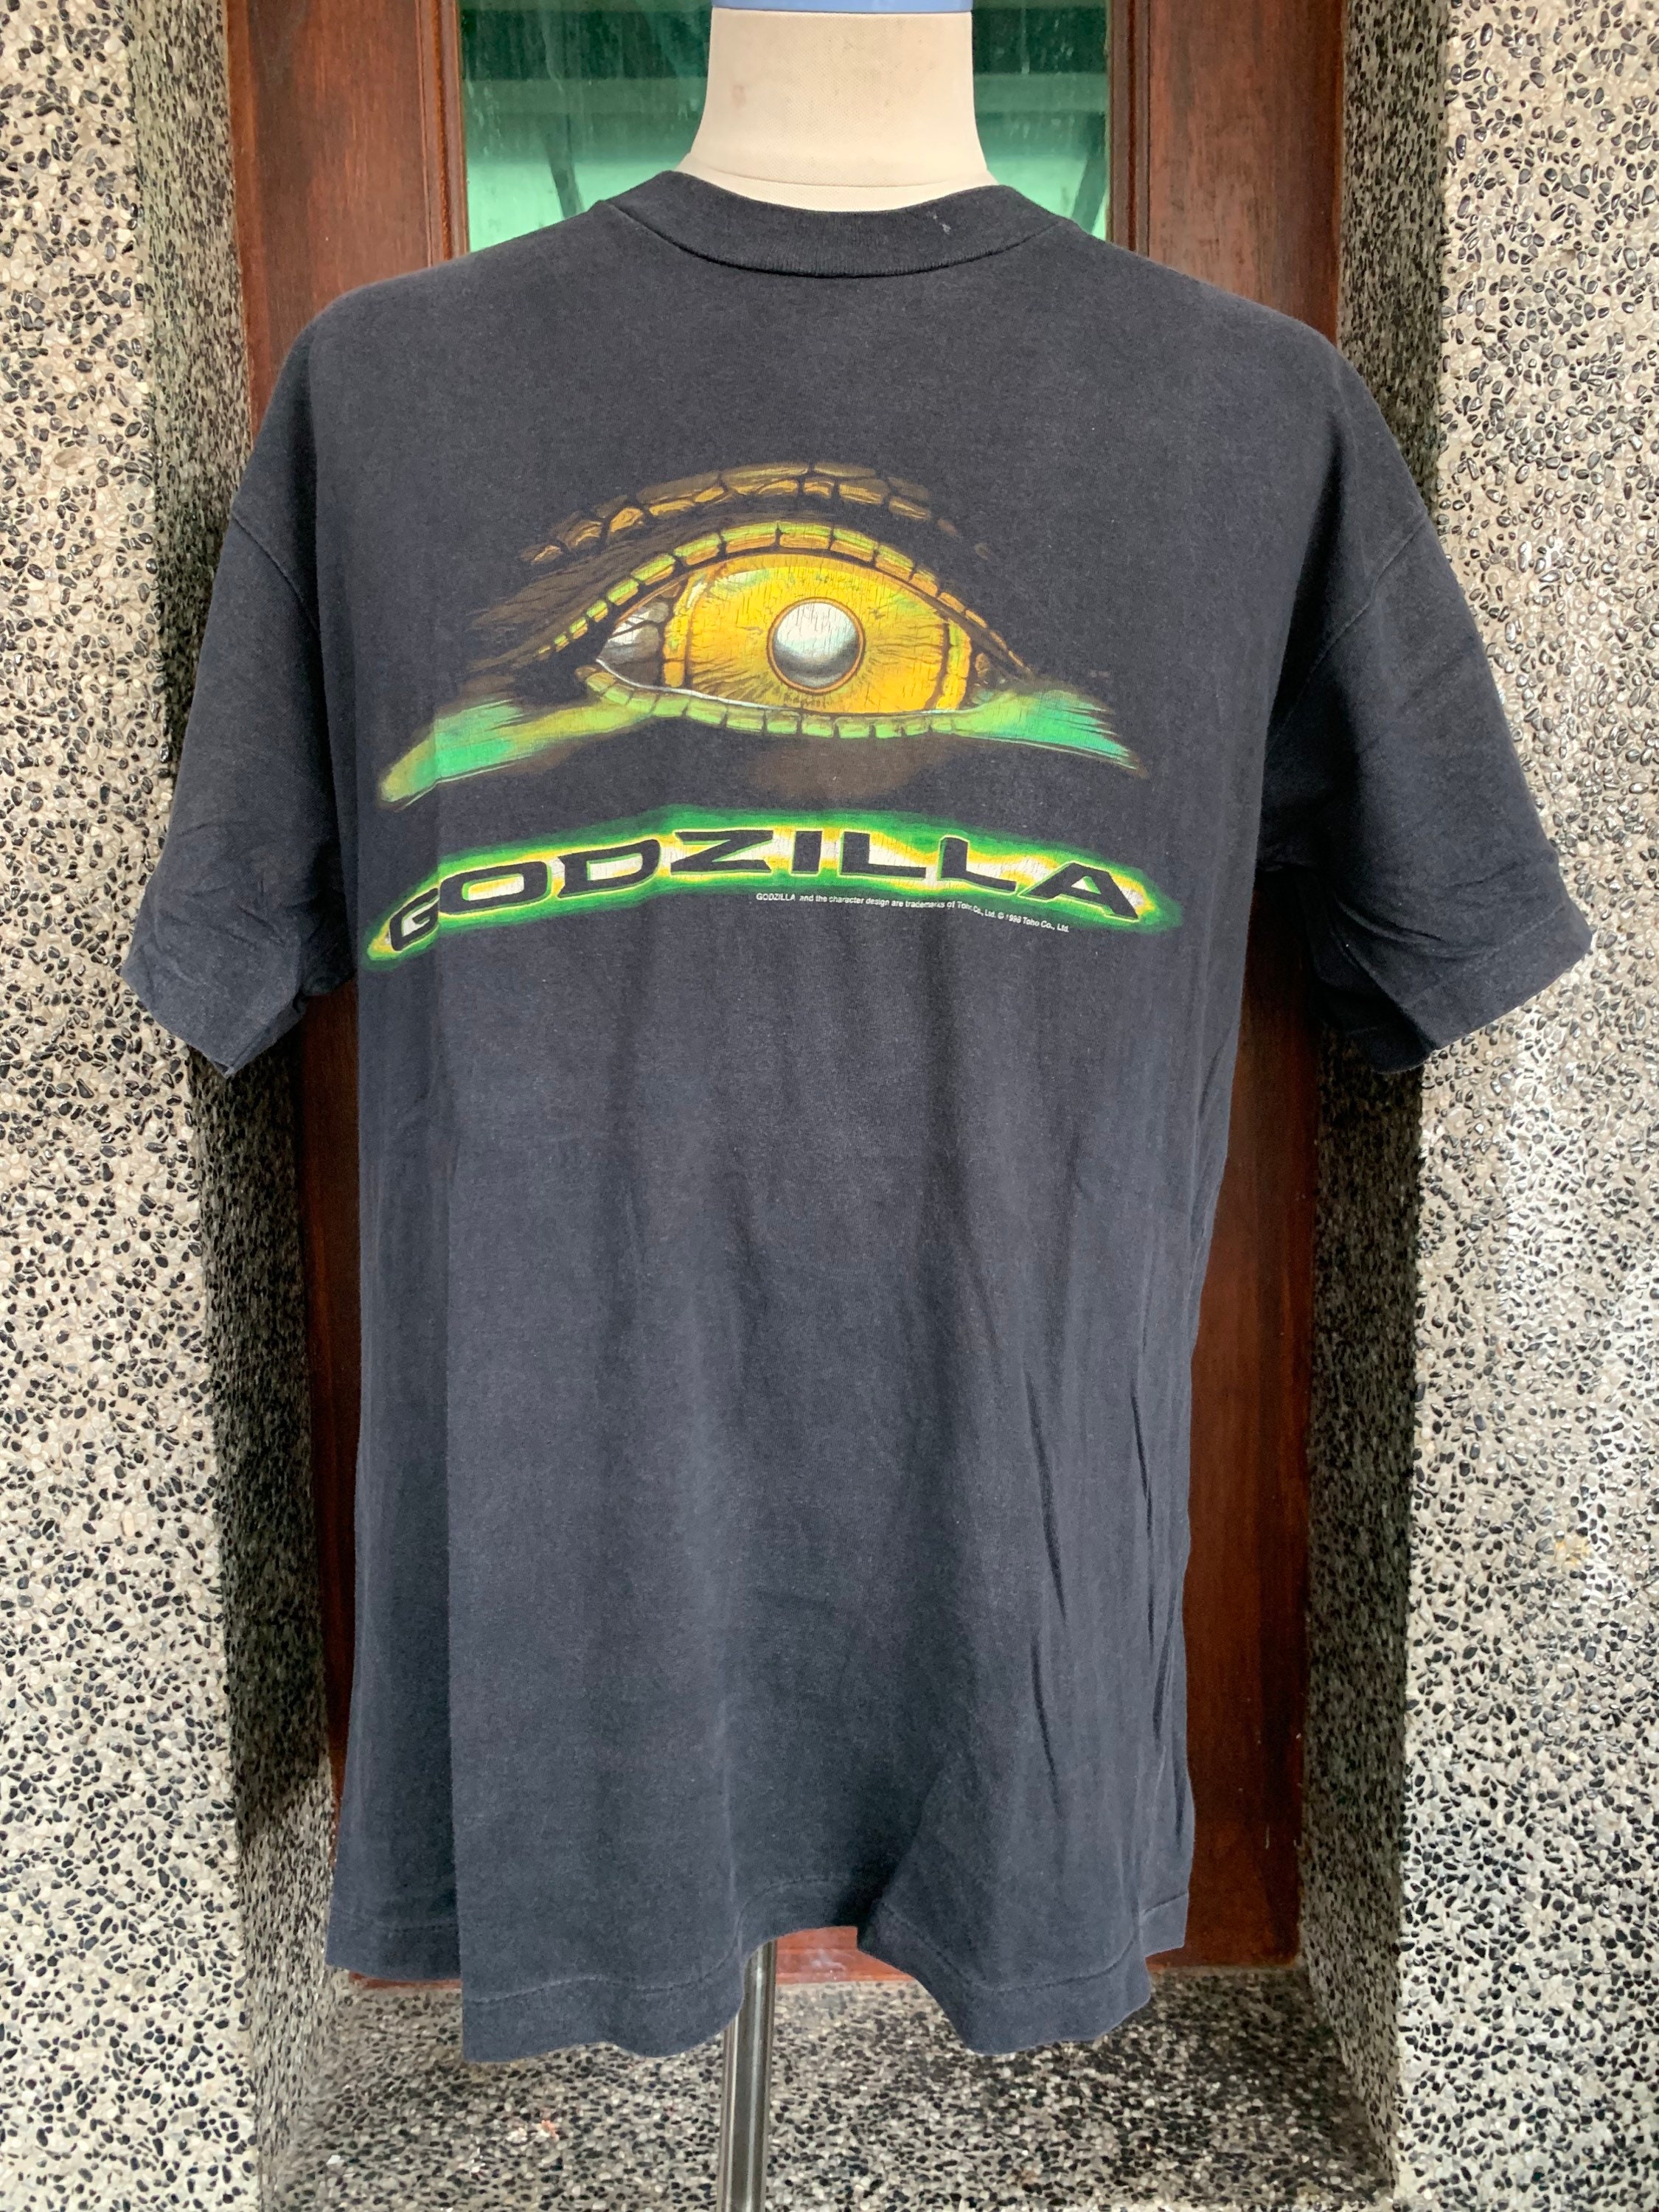 Vintage 90s Godzilla Movie Promo T Shirt - Etsy